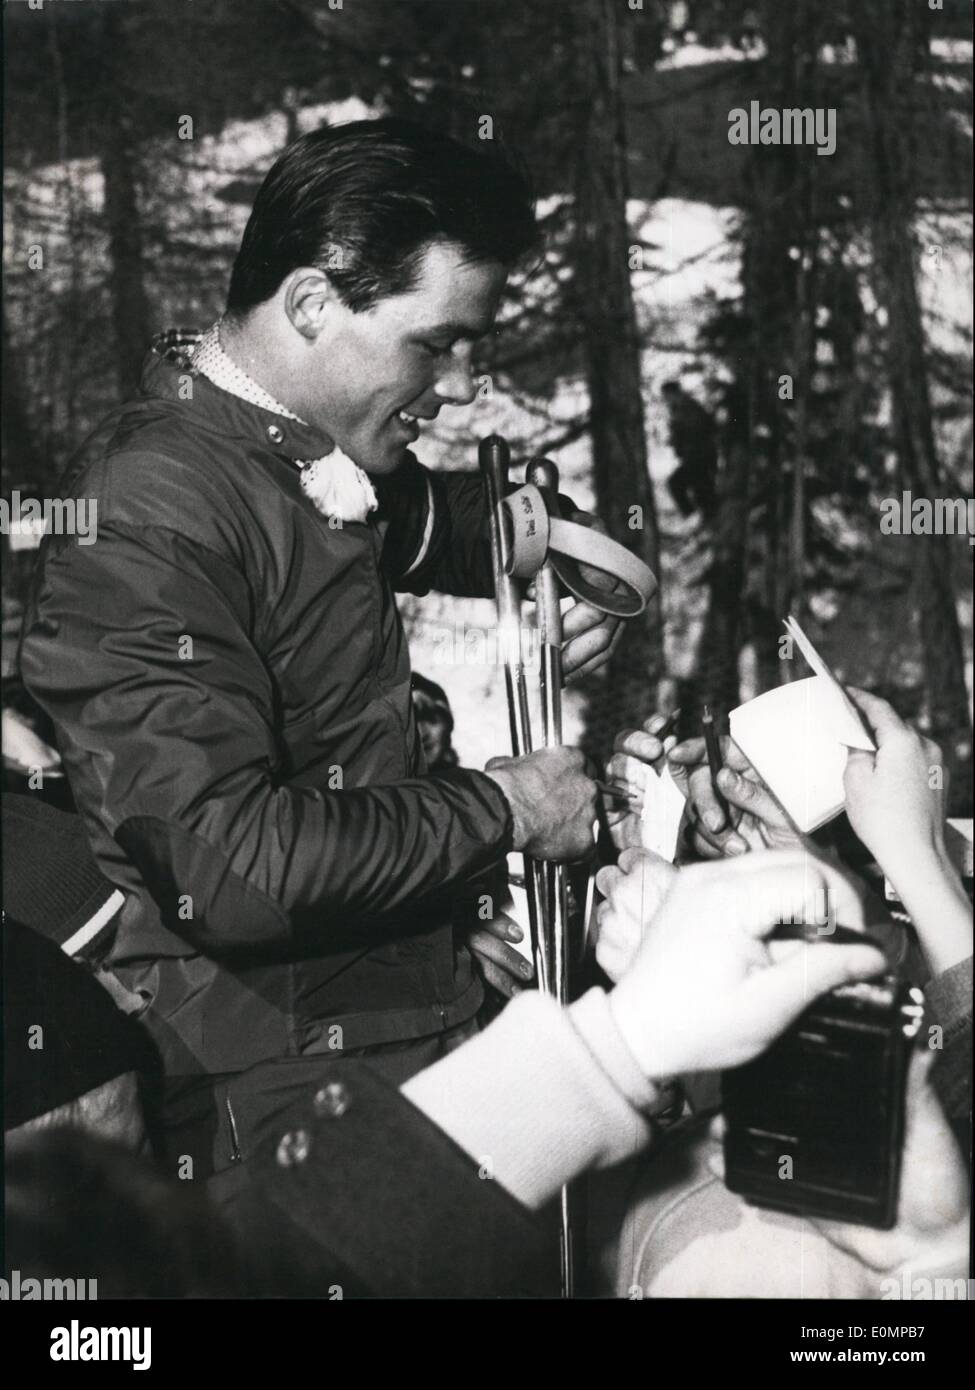 Febbraio 02, 1956 - La spalla-rider di Cortina. Quando Toni Sailer (TONI SAILER) dell'Austria ha conquistato la sua terza medaglia d'oro a Cortina, centinaia di appassionati di sport di lui ha preso sulle sue spalle. Lì fu costretto a dare la sua firma di nuovo e di nuovo. Foto Stock